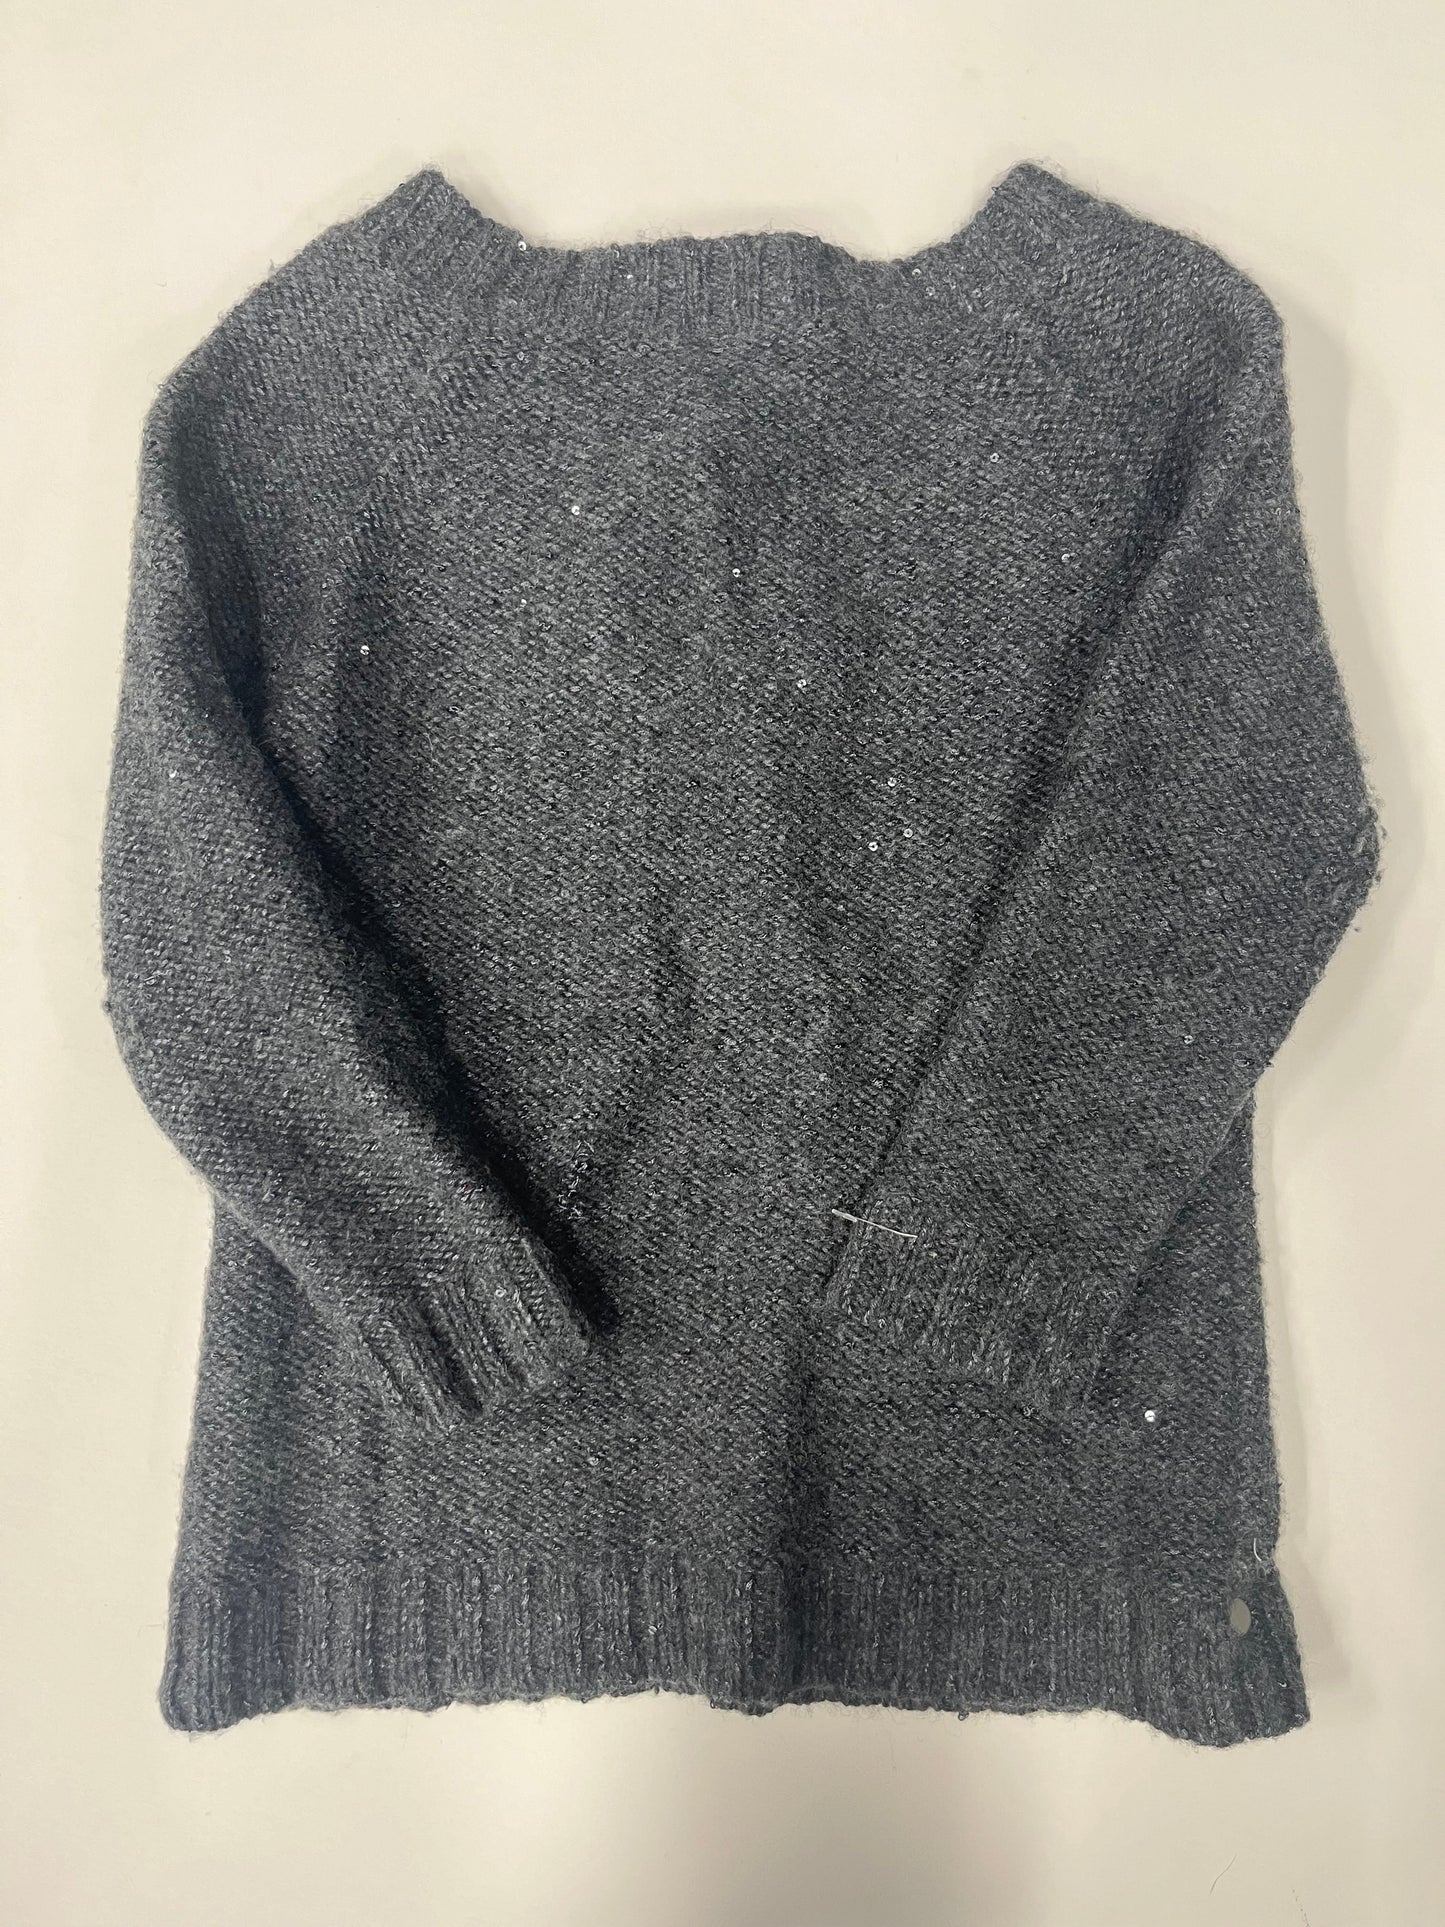 Sweater Heavyweight By Talbots  Size: Petite   Xs